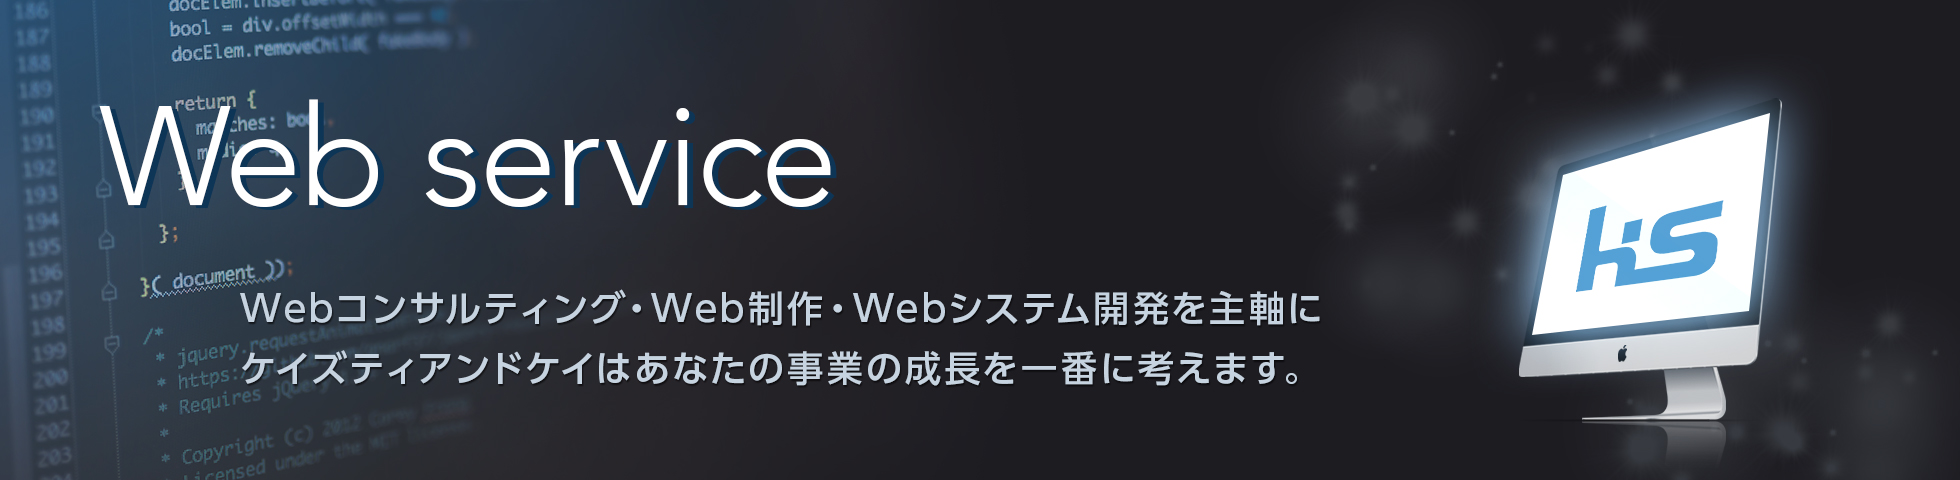 Web service ウェブサービス